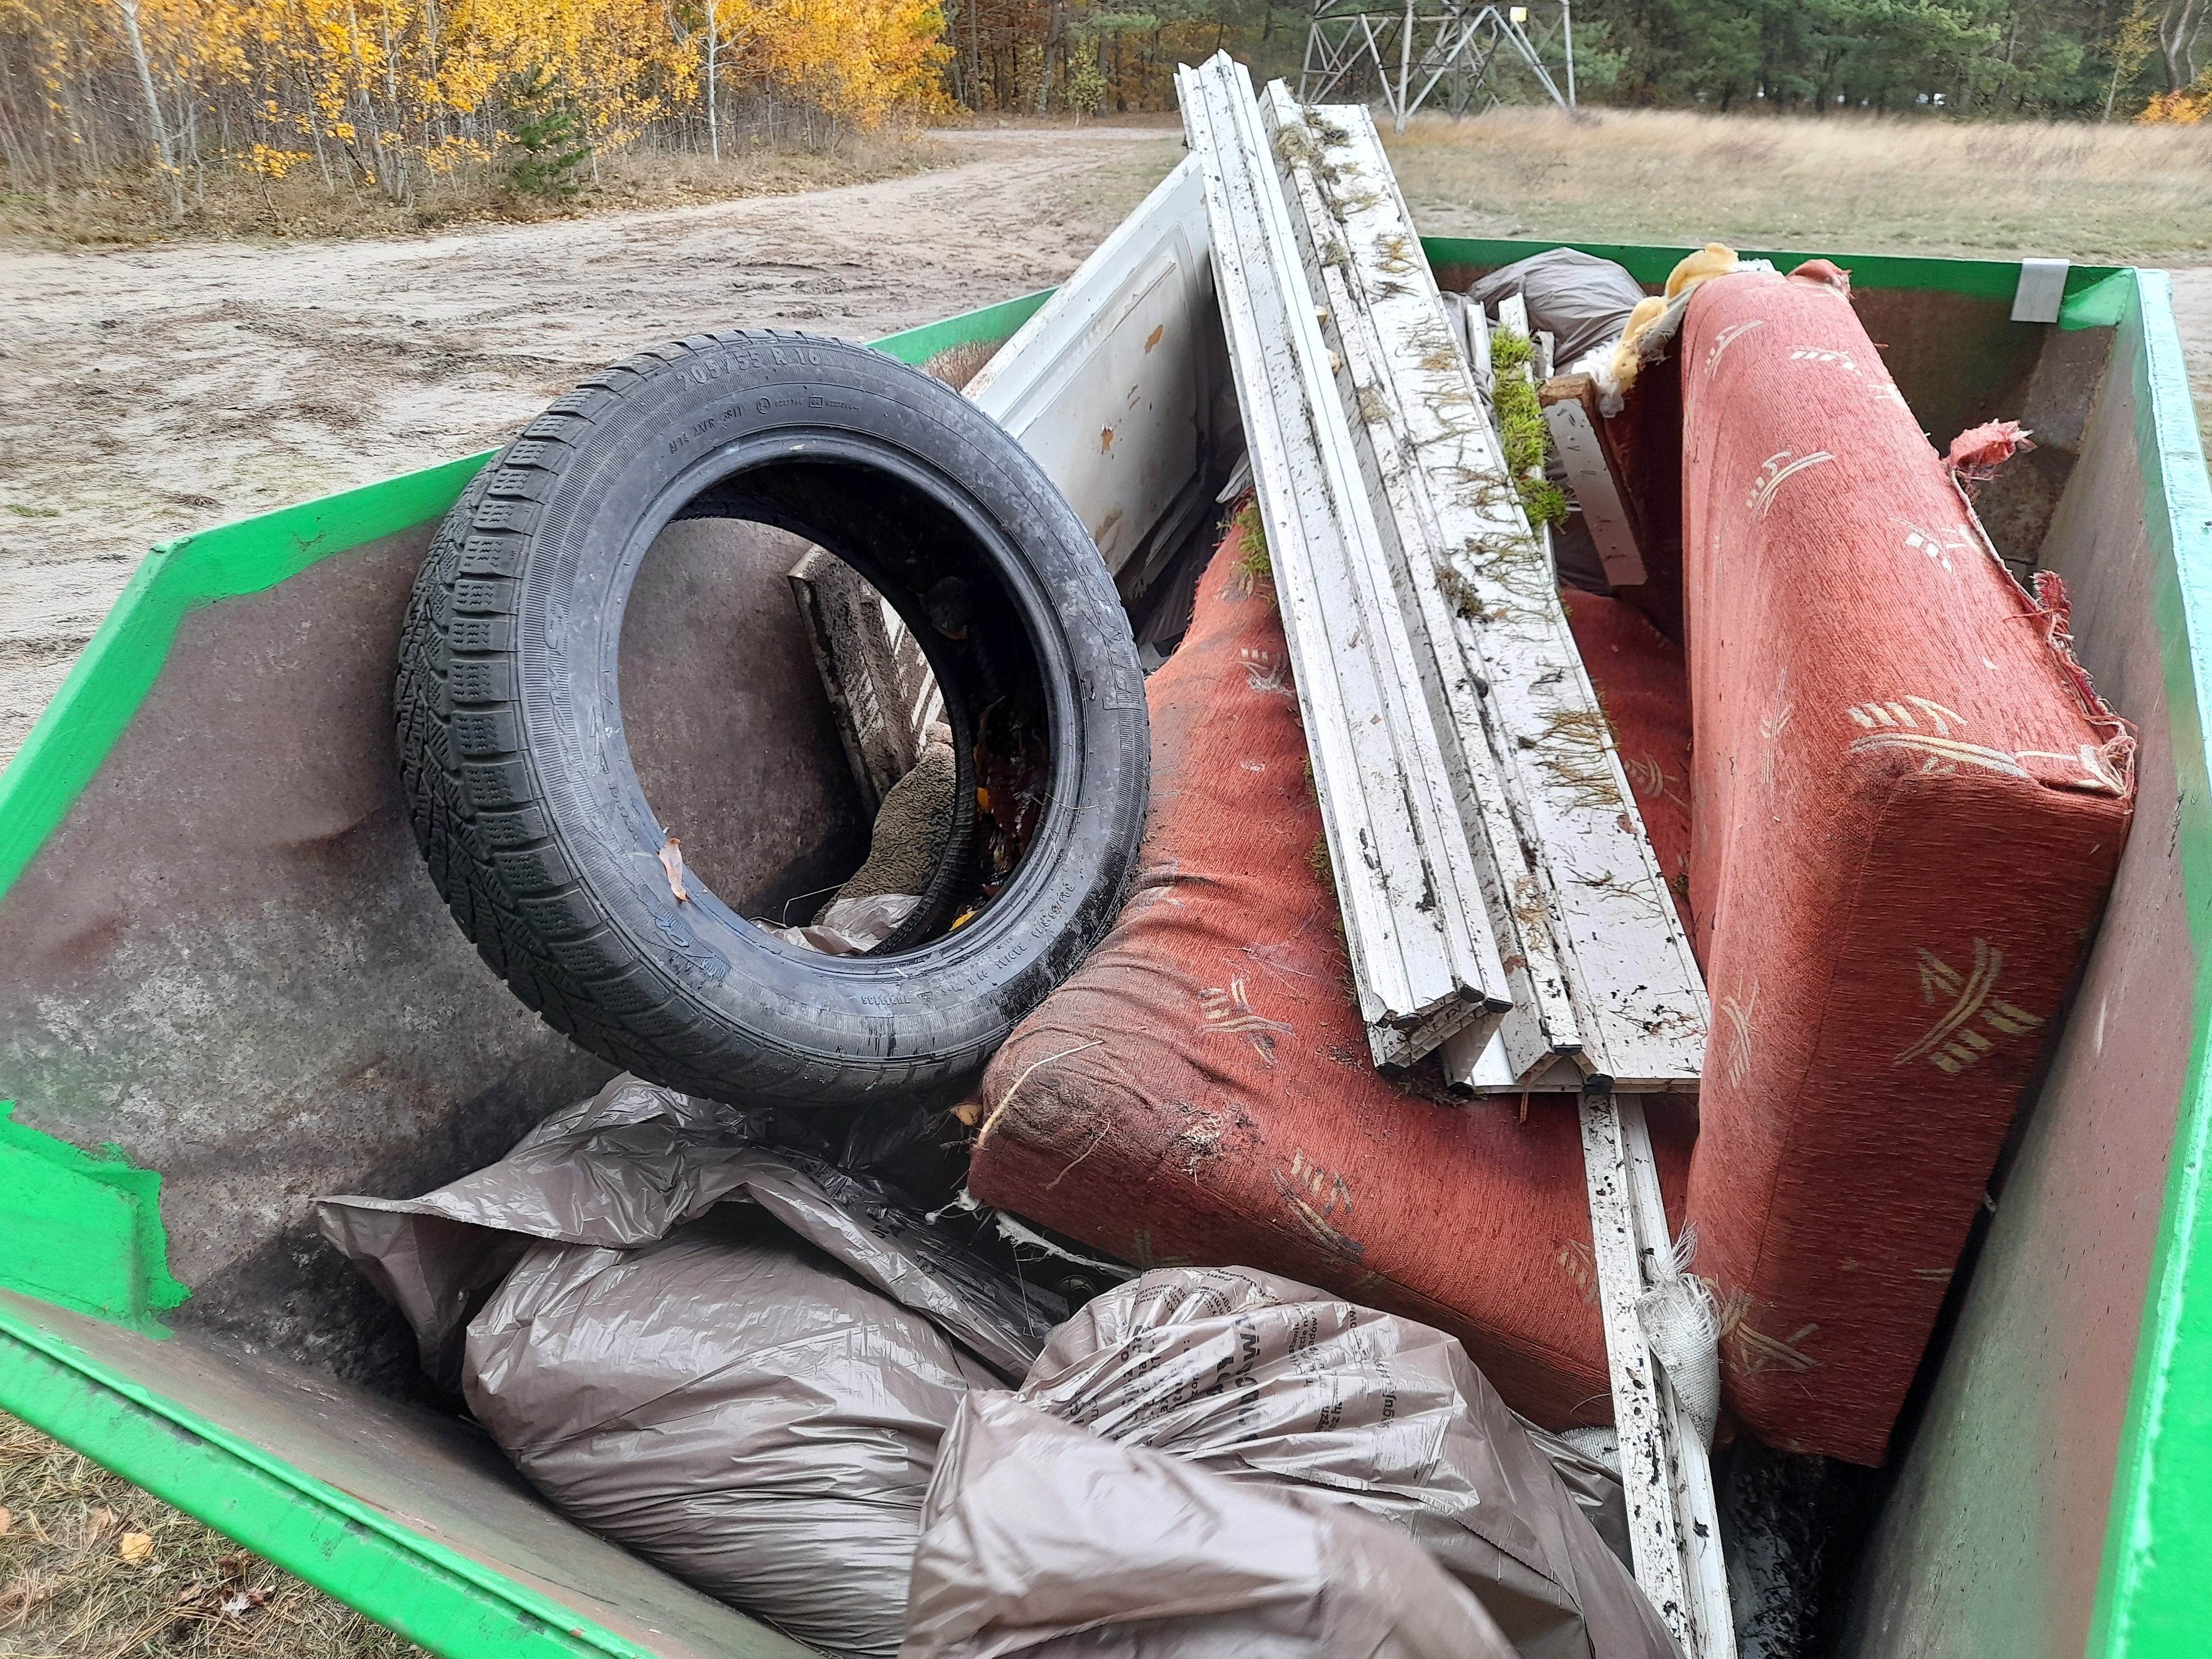 Ustawiony w lesie kontener na odpady. W środku odpady: elementy konstrukcyjne, stara kanapa, opony samochodowe i worki z odpadami.